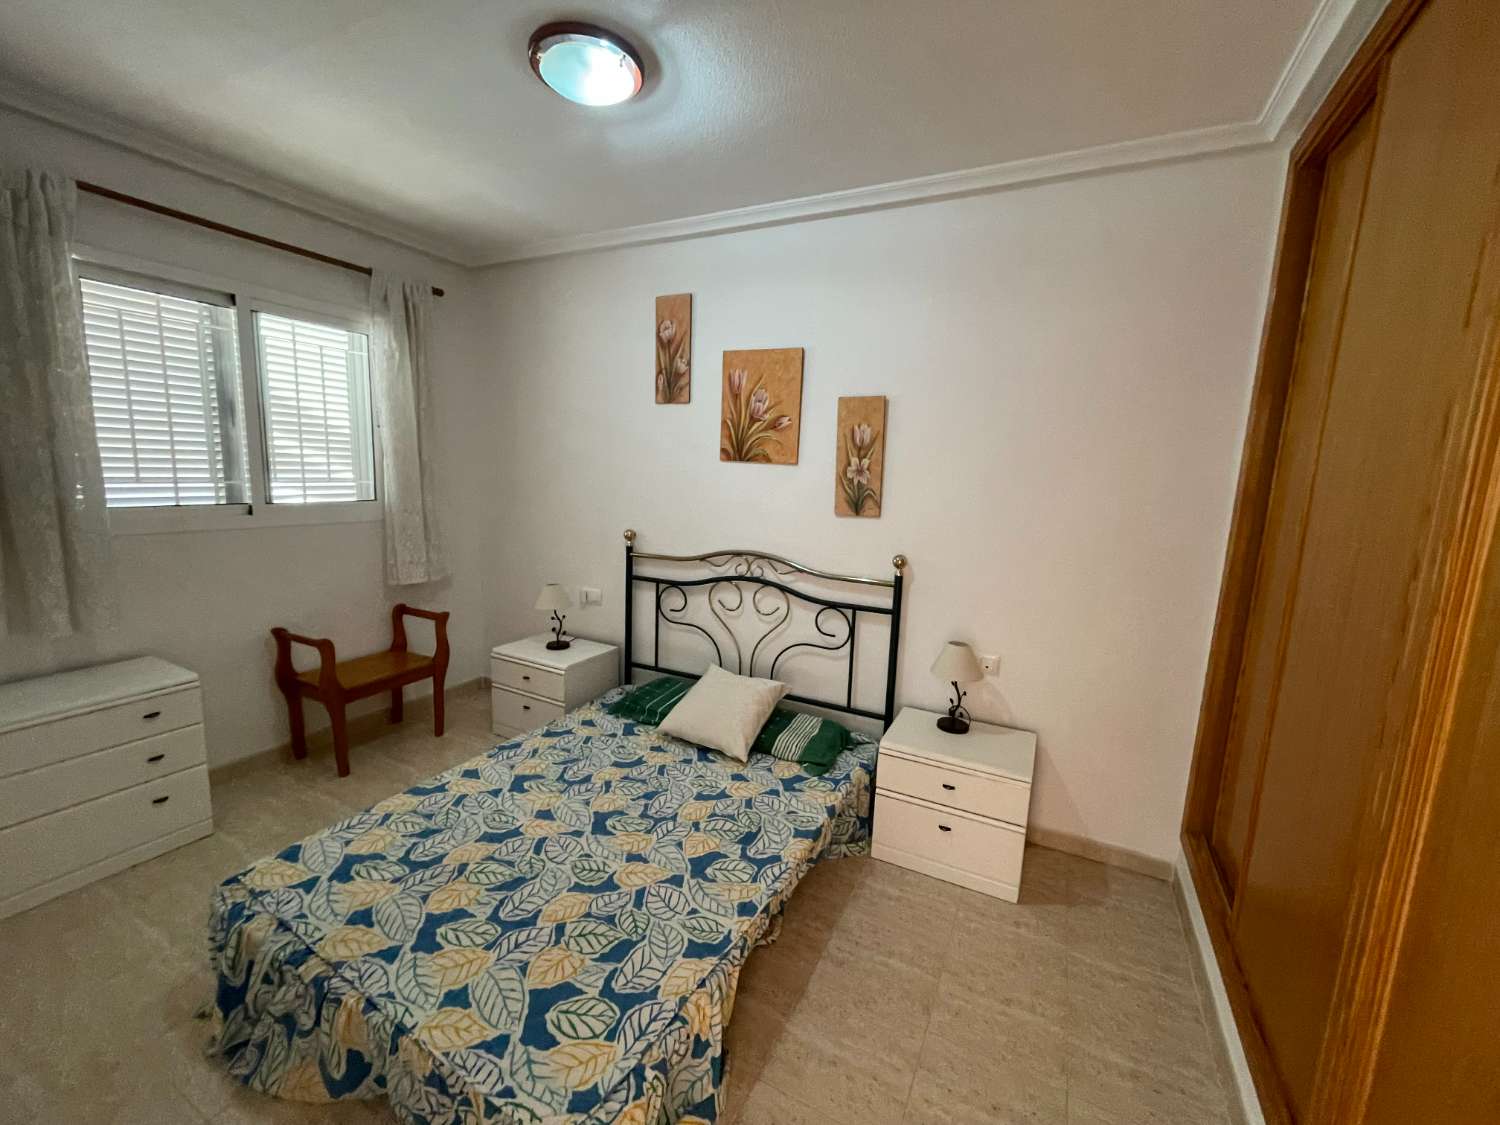 Precioso apartamento de 1 dormitorio con terraza en la azotea en Zeniamar.